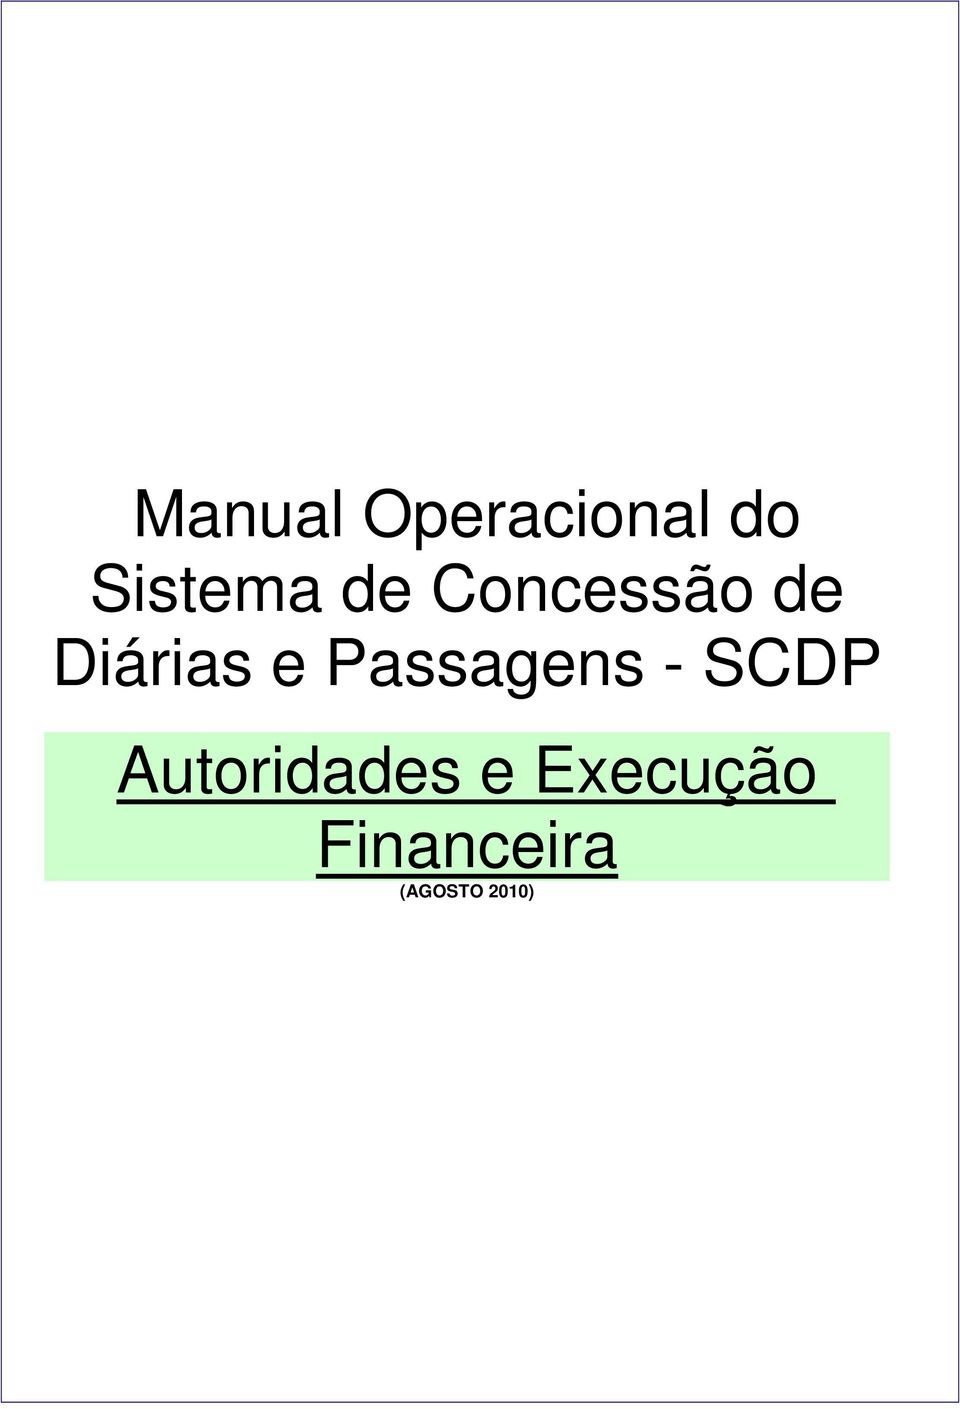 Passagens - SCDP Autoridades